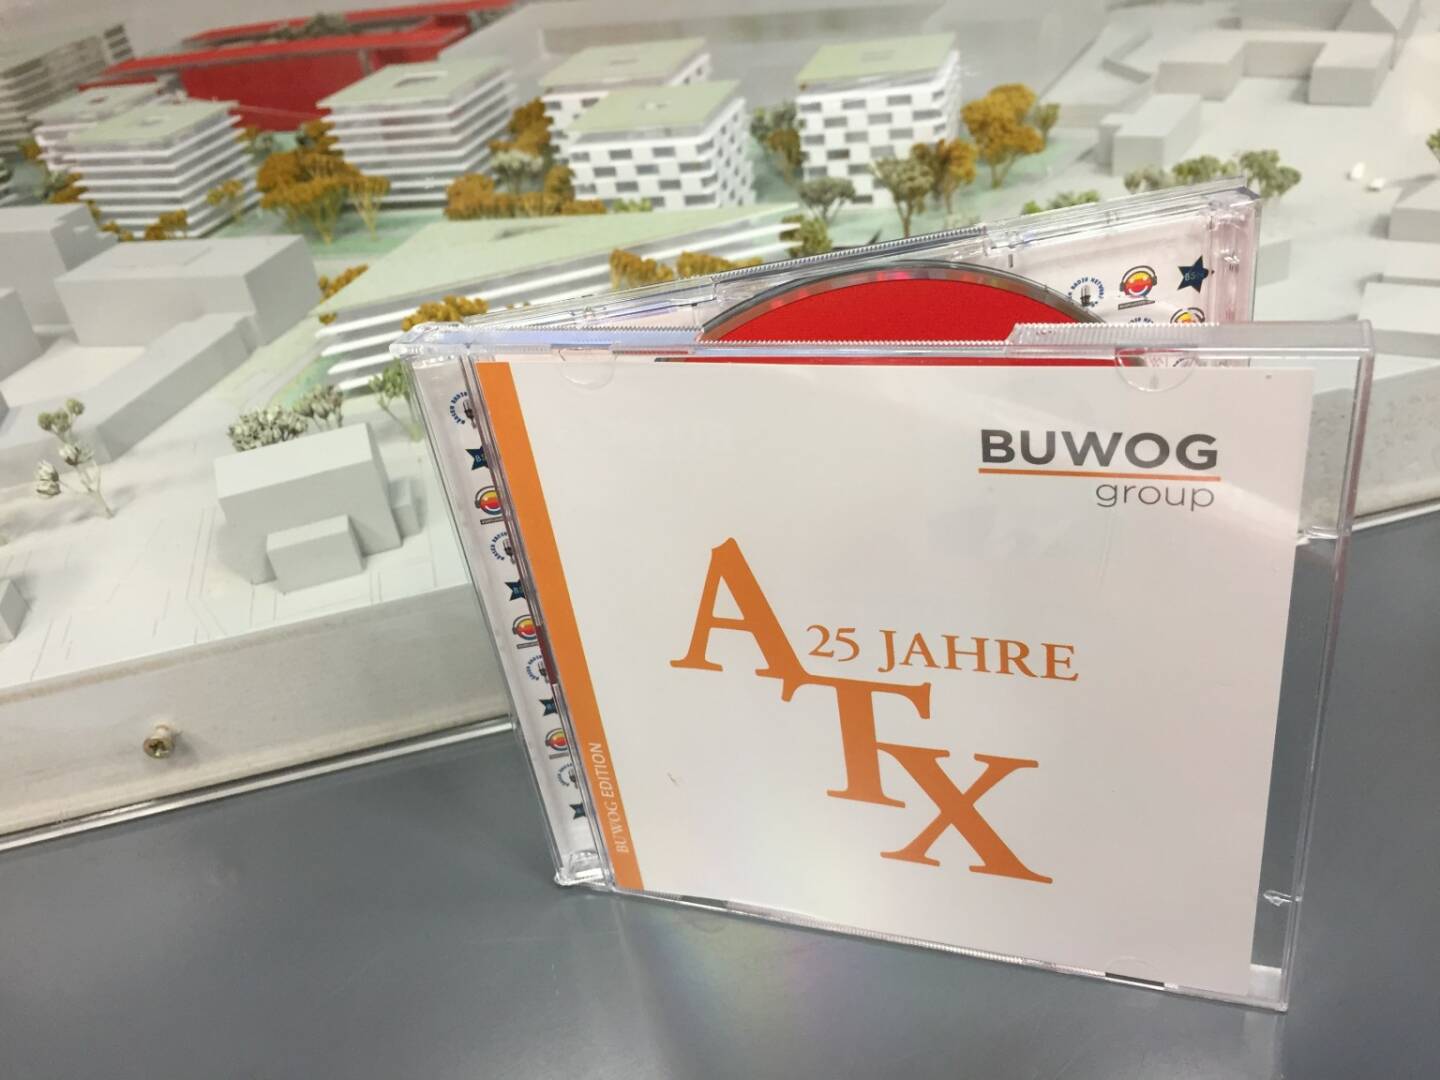 Bei der Buwog: 1000 Stück der 25-Jahre-ATX in der Sonderedition wurden geliefert